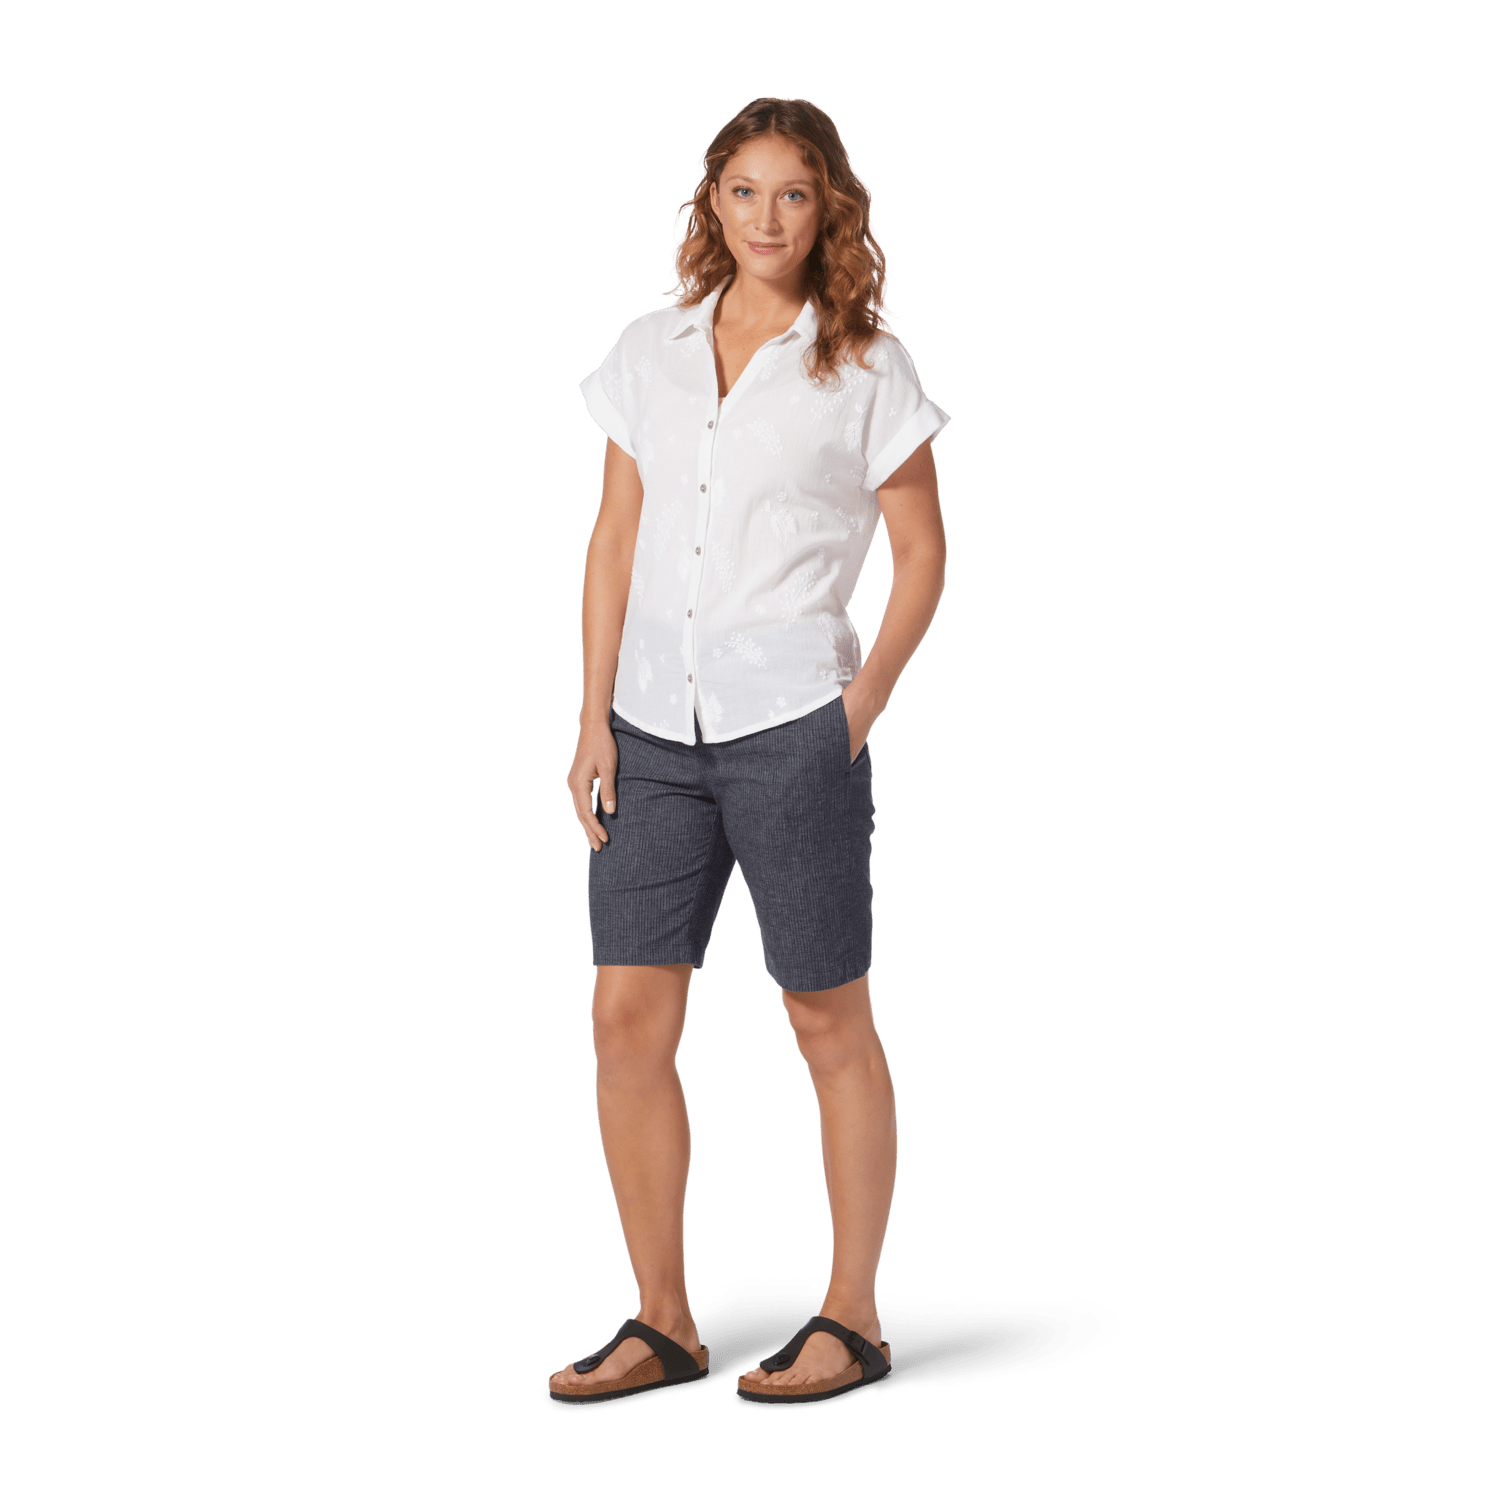 Royal Robbins - W's Hempline Tie Bermuda shorts - Hemp & Recycled polyester - Weekendbee - sustainable sportswear